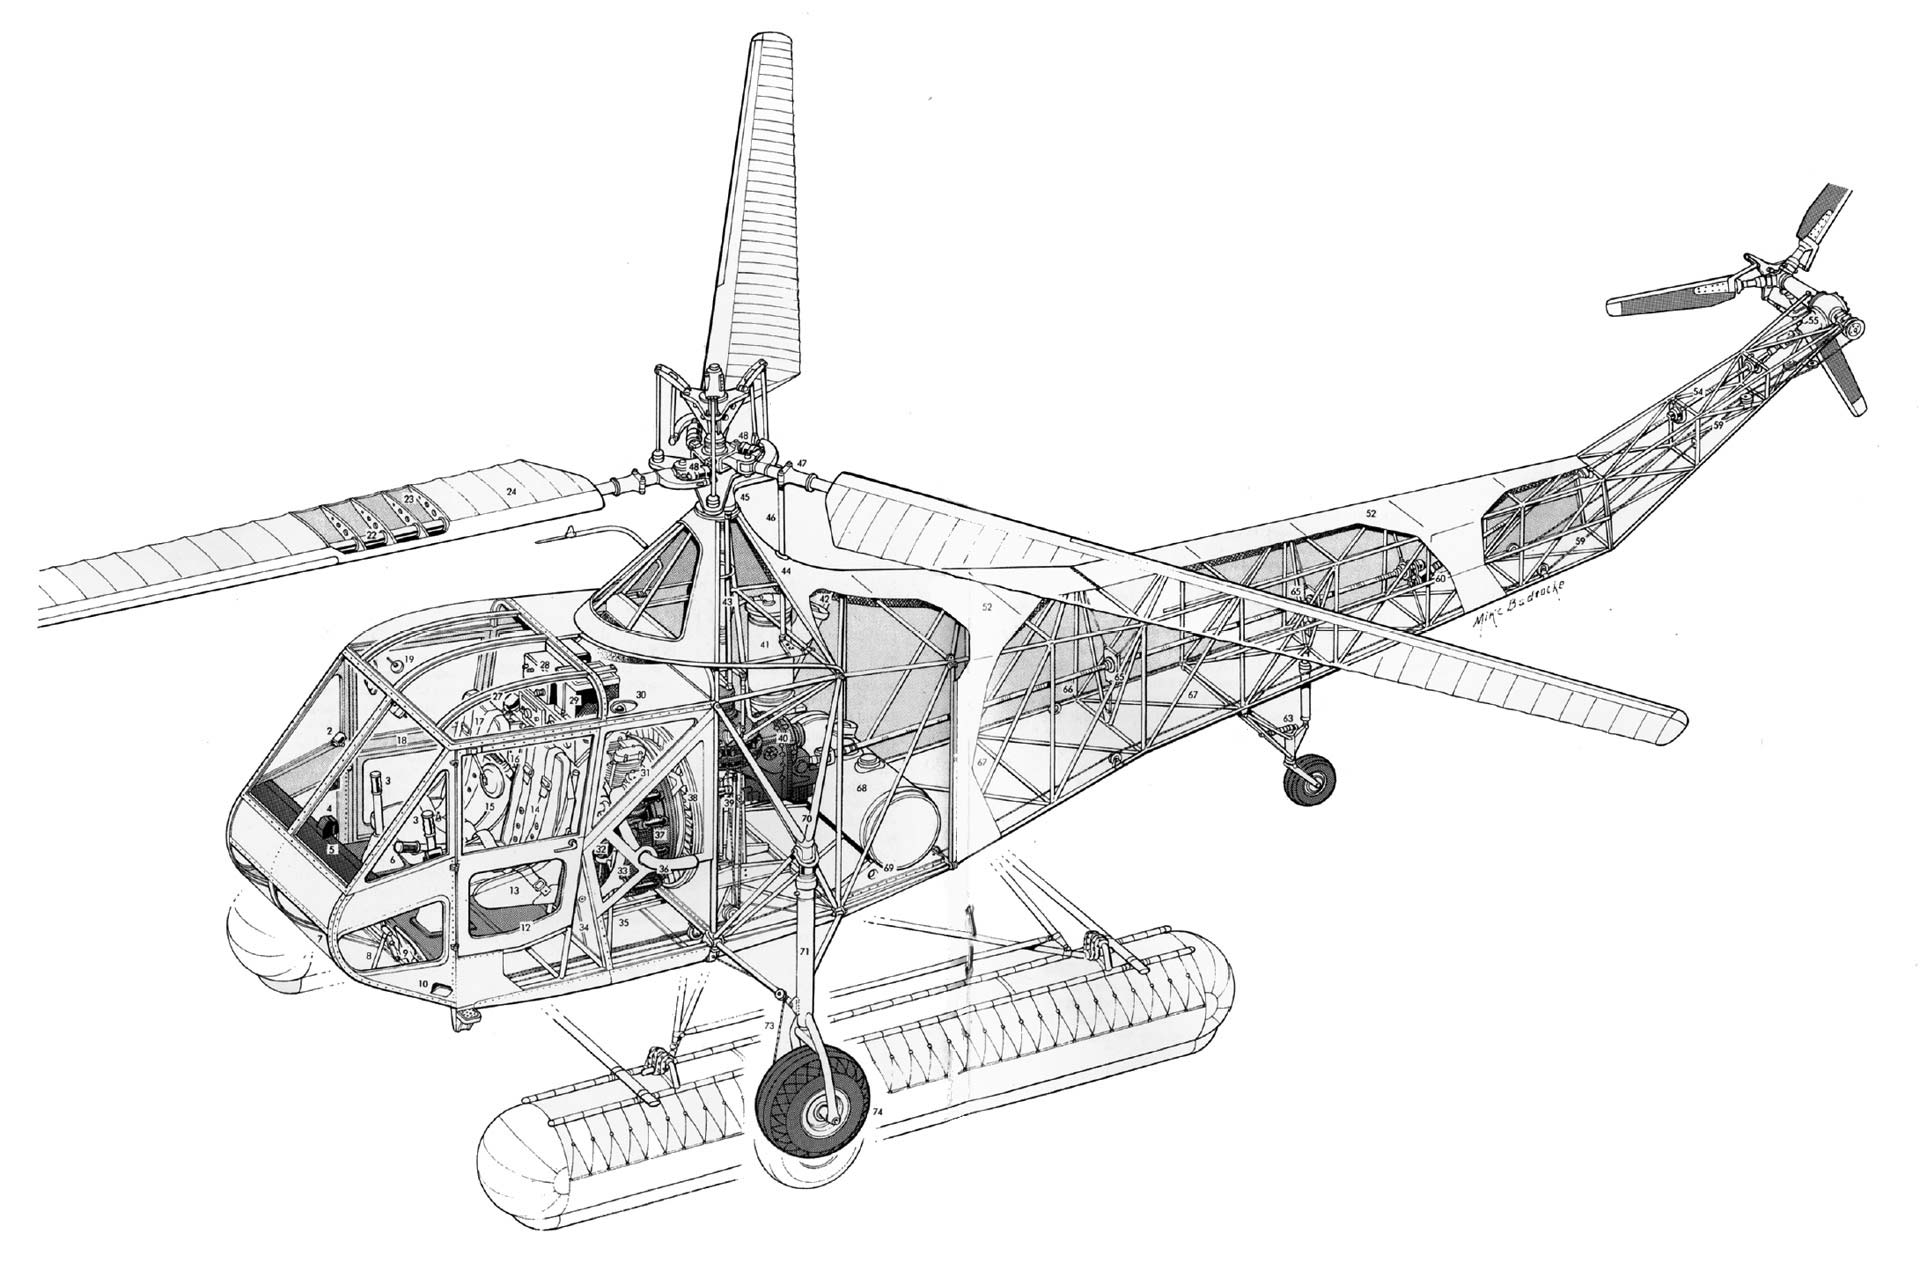 Sikorsky R-4 cutaway